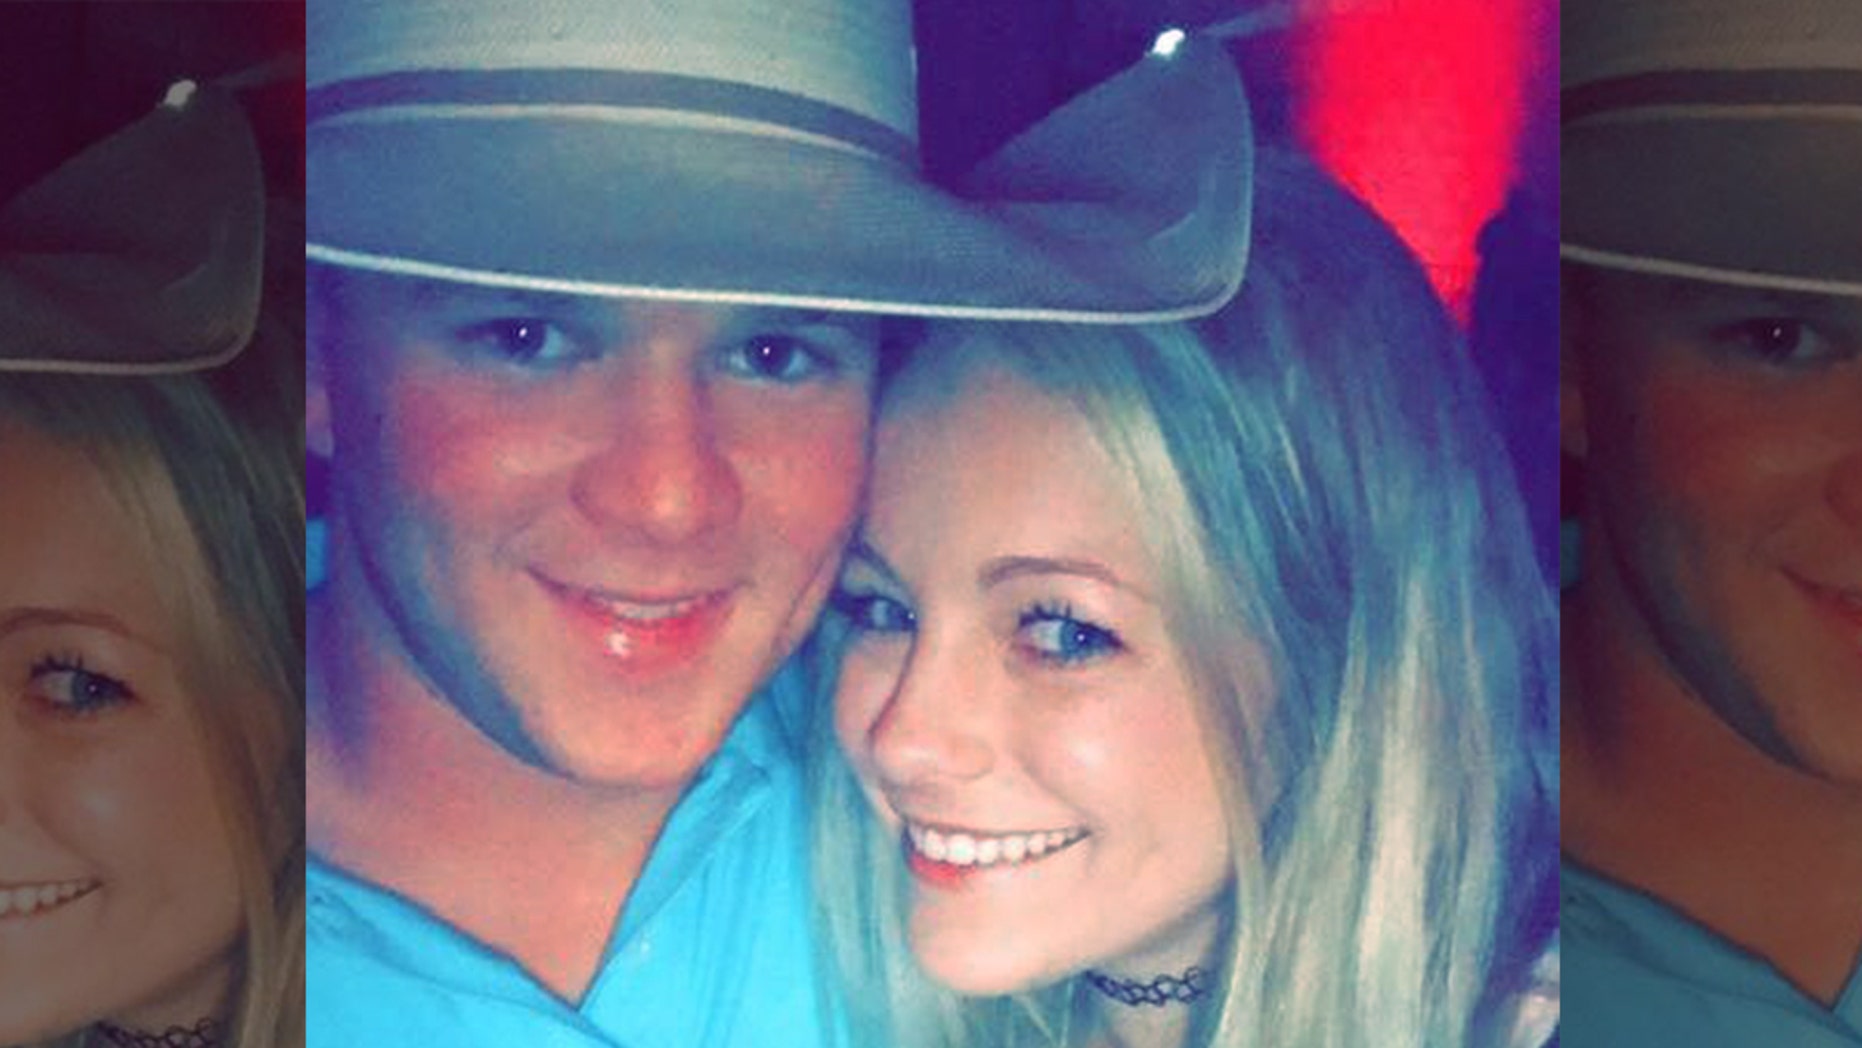 William Byler et Bailee Ackerman sont décédés samedi après le crash de l'hélicoptère familial, quelques heures à peine après leur mariage, au Texas.